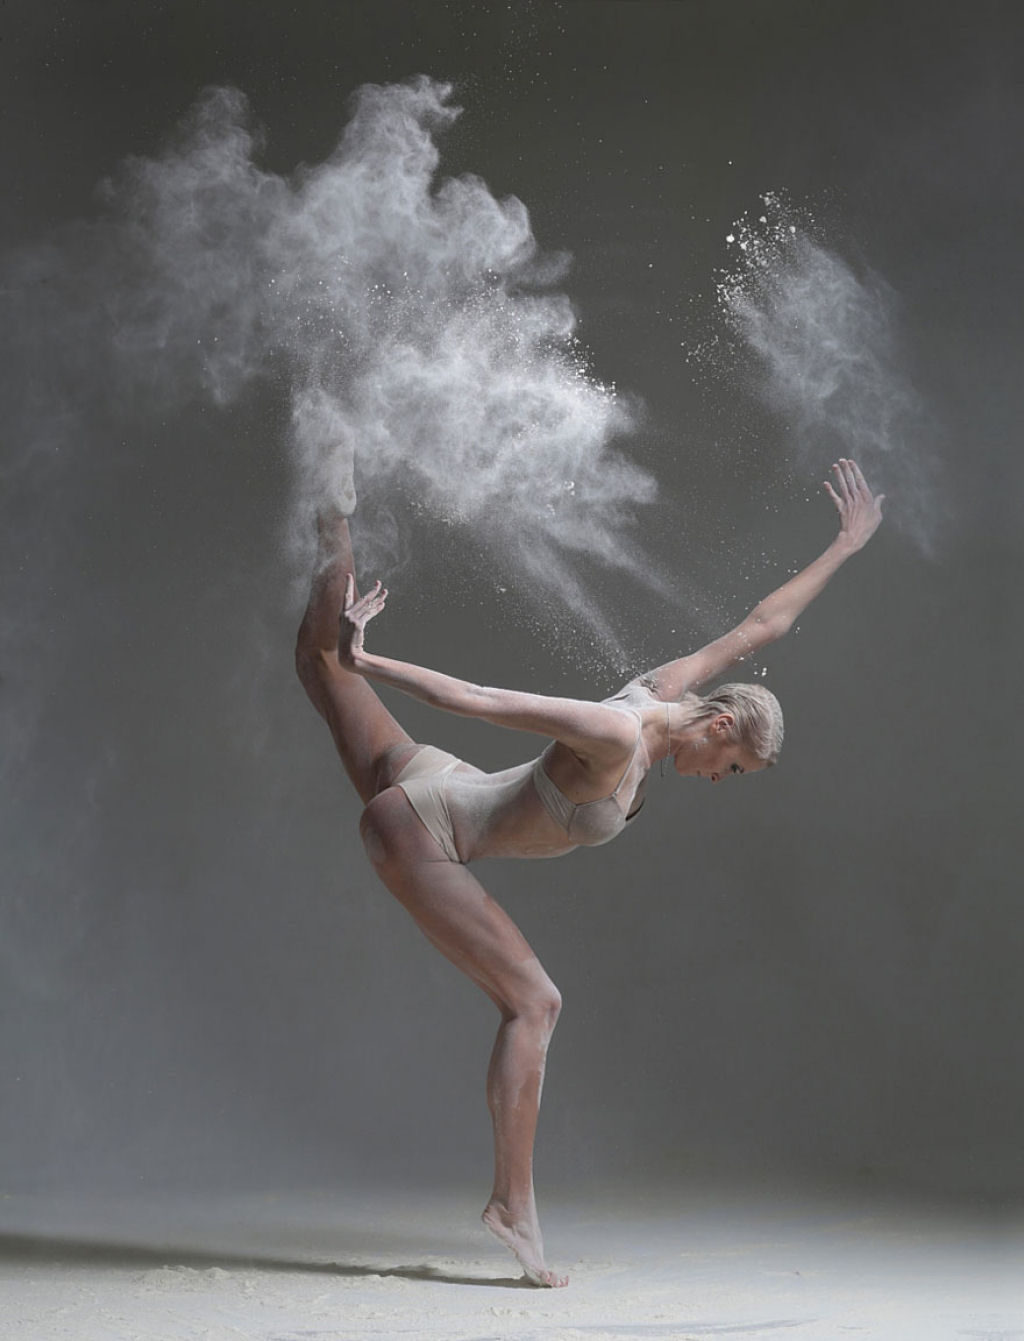 Explosivos retratos de dana revelam os poderosos movimentos de elegantes bailarinos 13